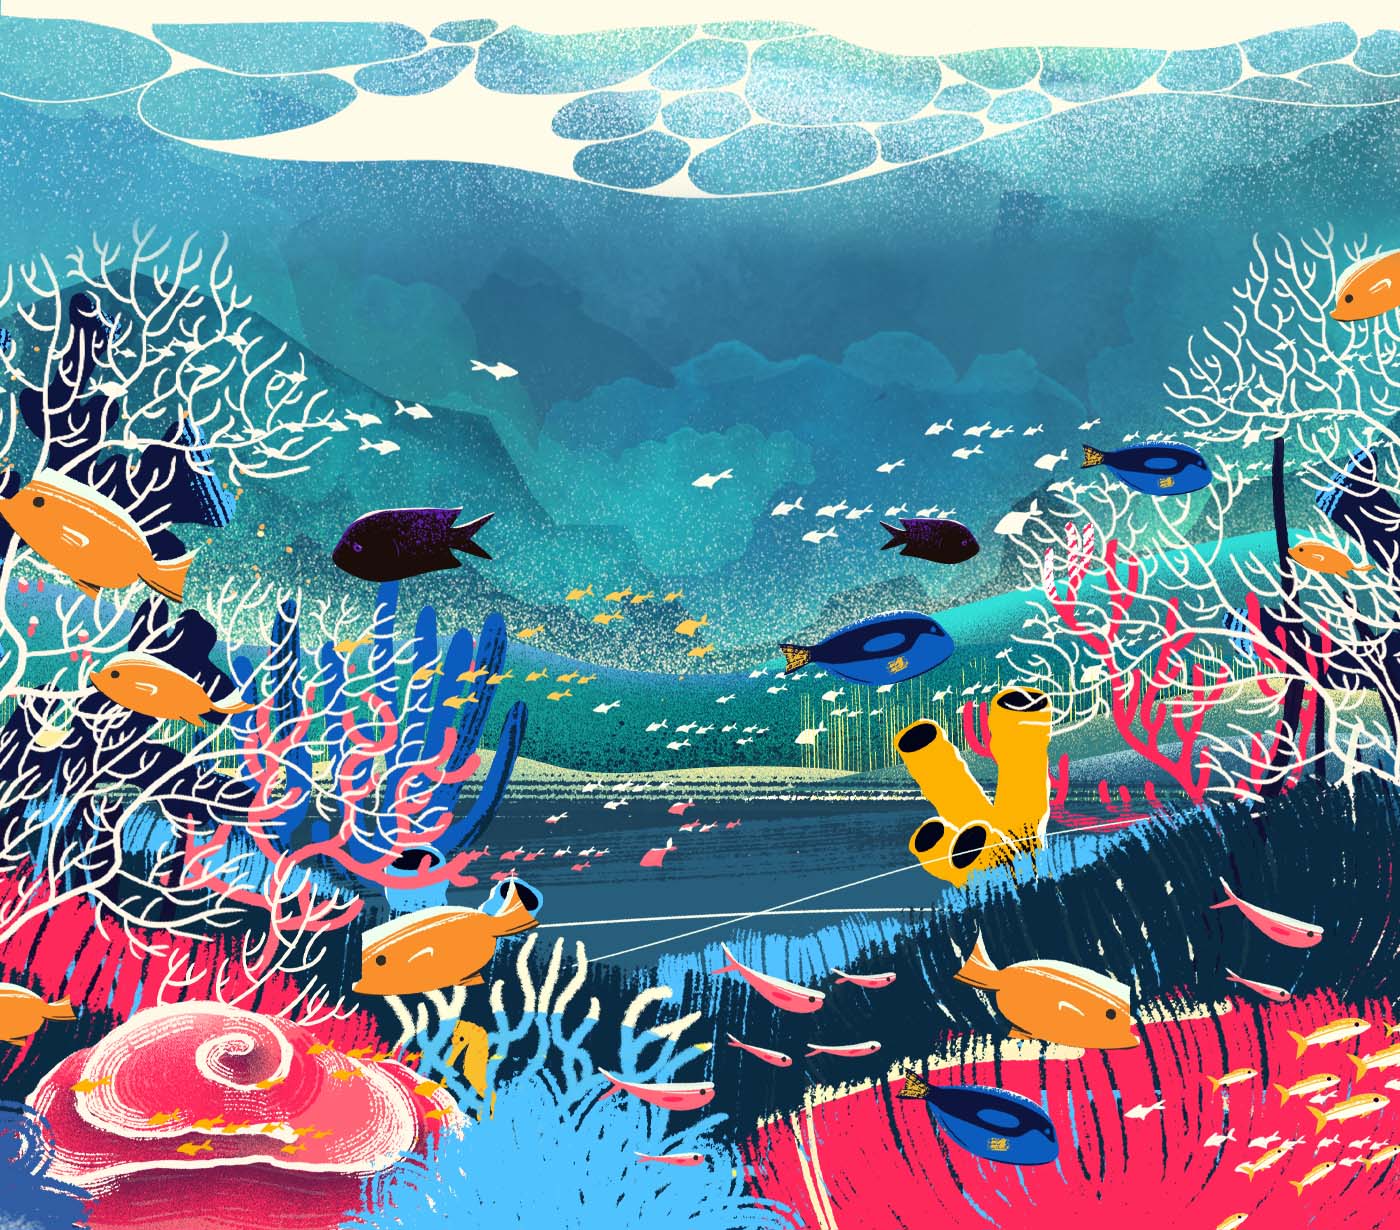 WWF - in the ocean, ending illustration